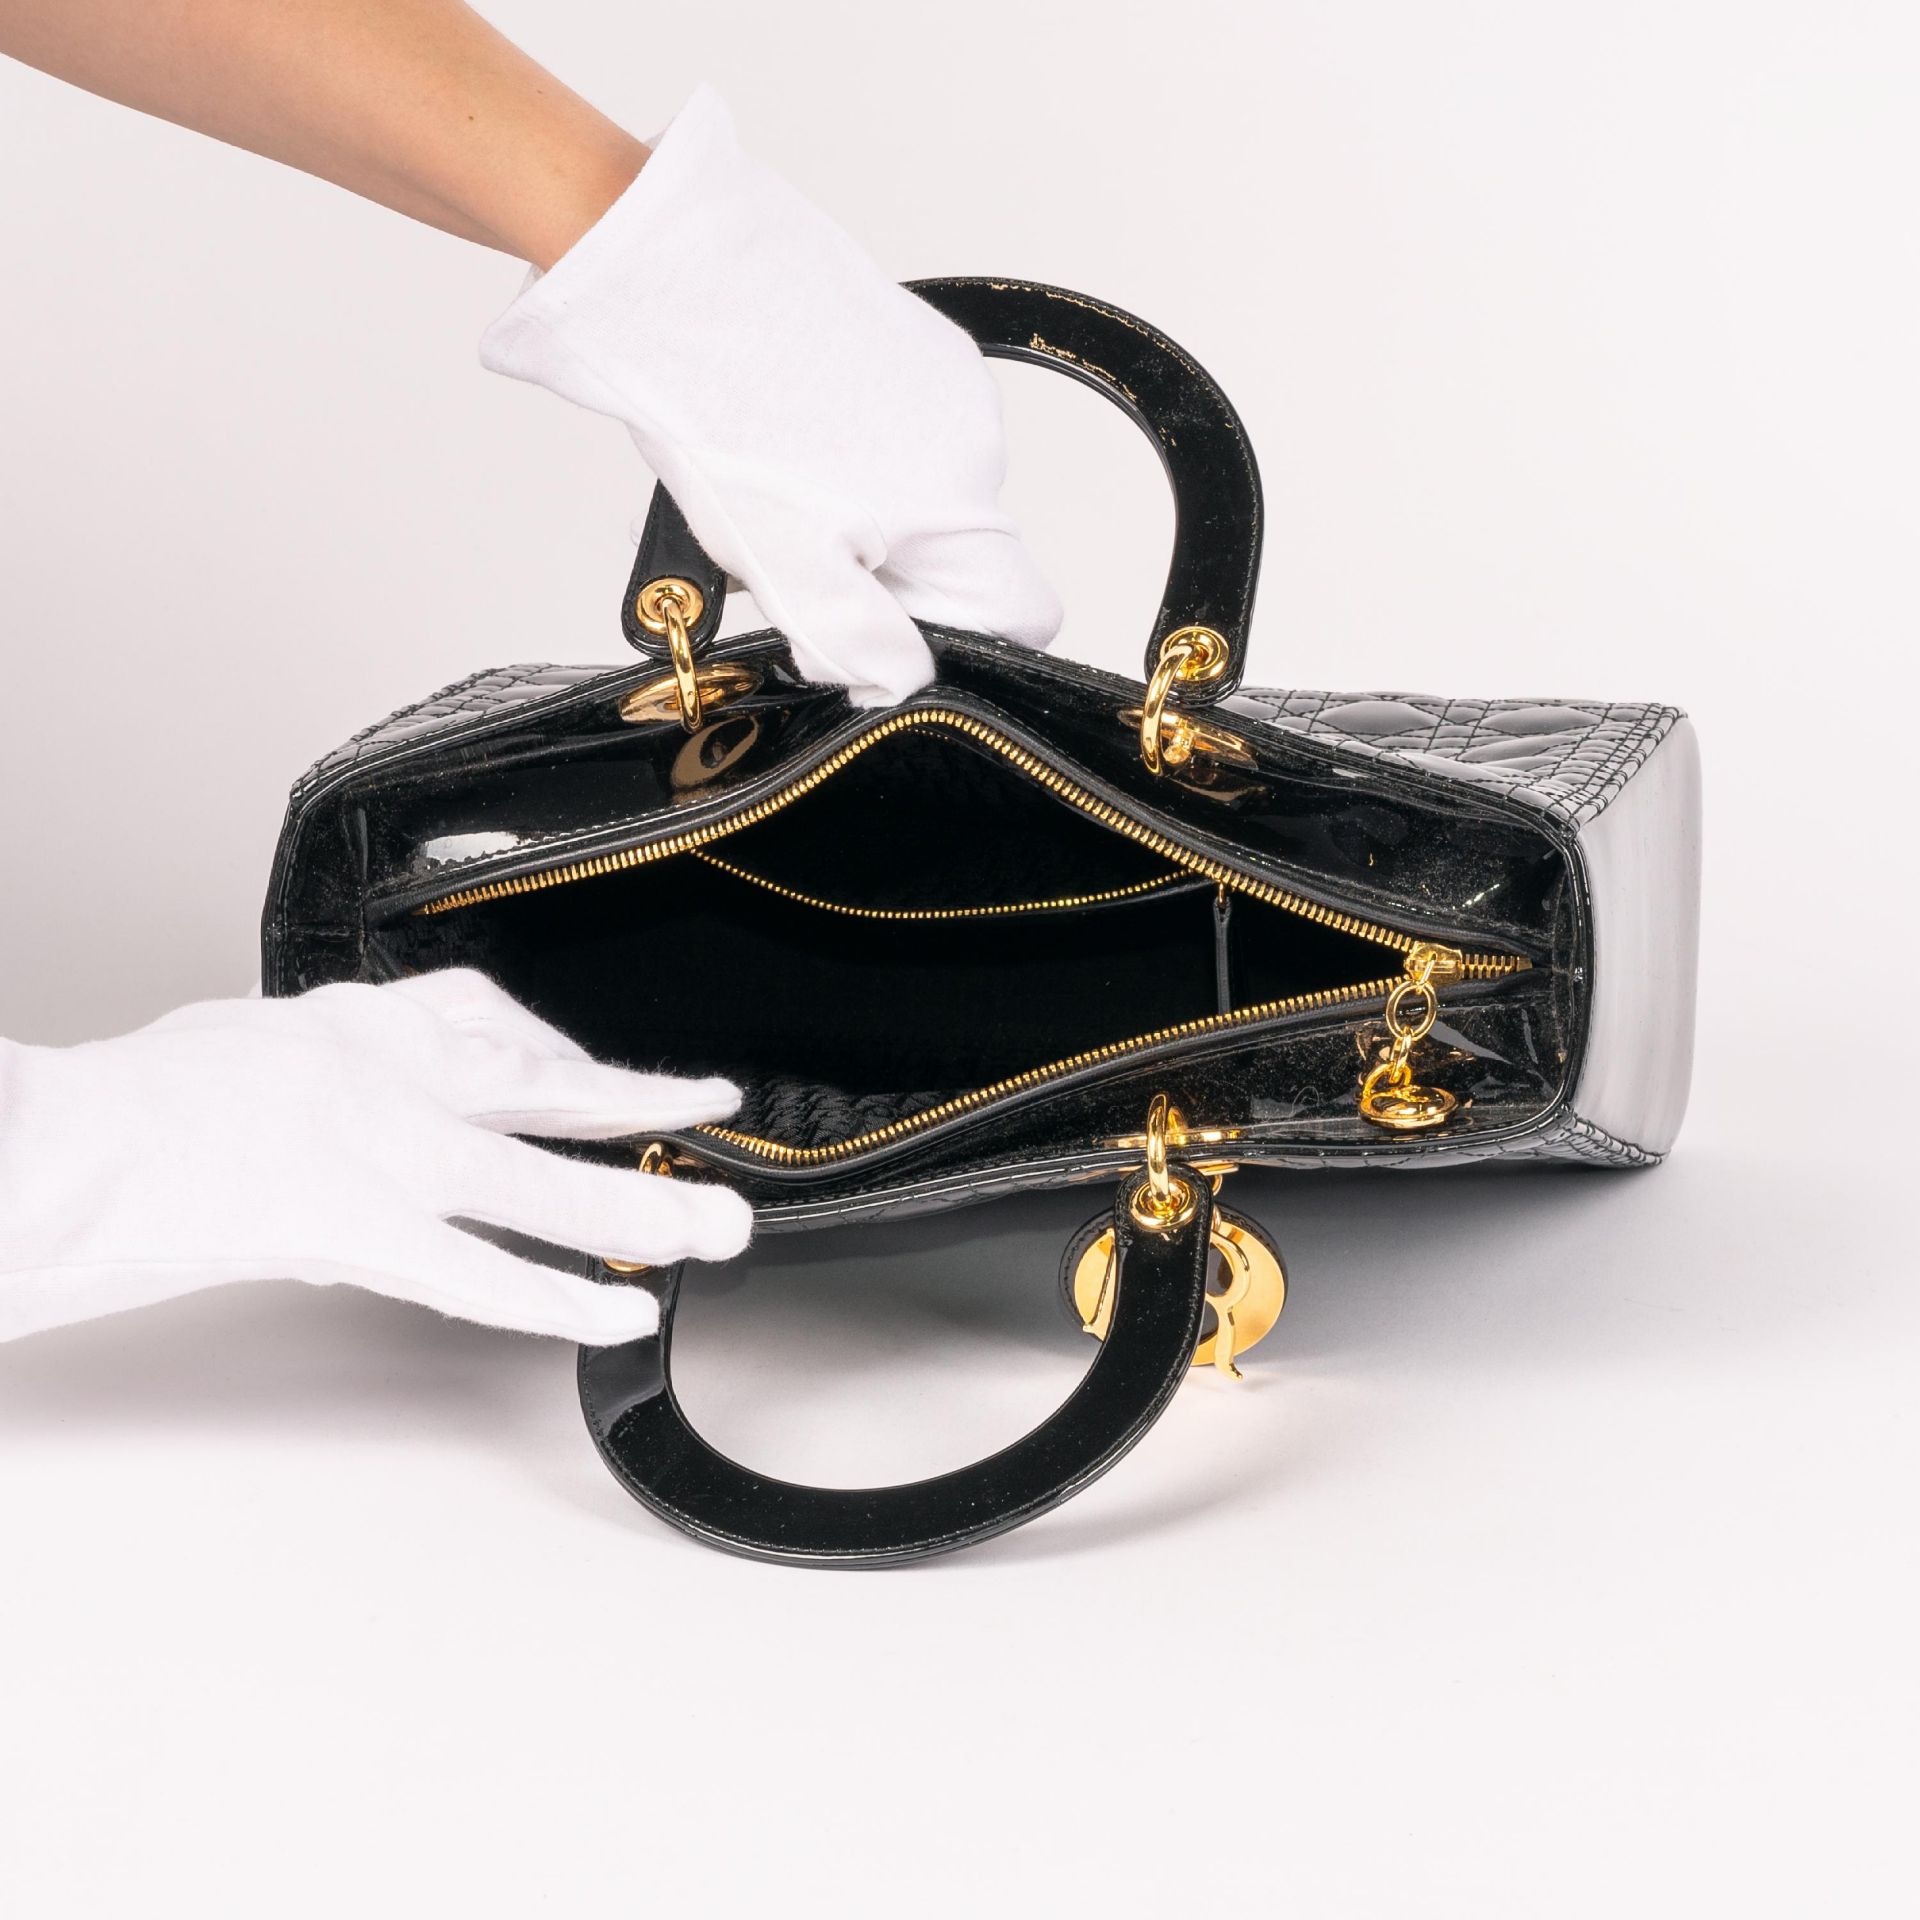 Christian Dior: Handtasche 'Lady Dior' - Bild 6 aus 6